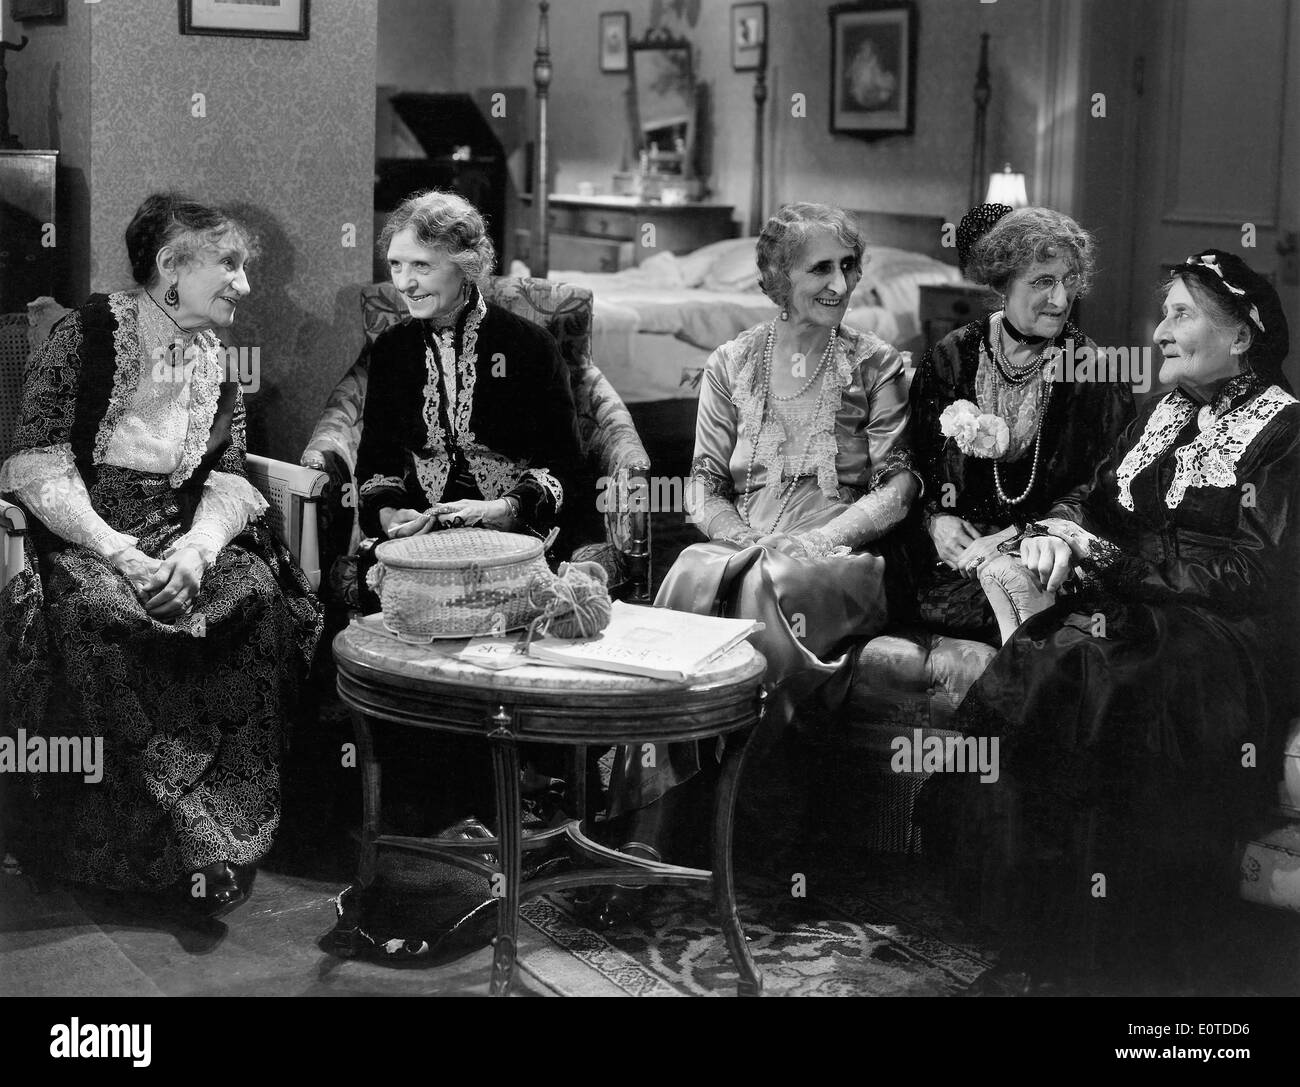 Clara Bracy (à gauche) et le groupe de femmes âgées, de sur-ensemble du film, "Si j'avais un million", 1932 Banque D'Images